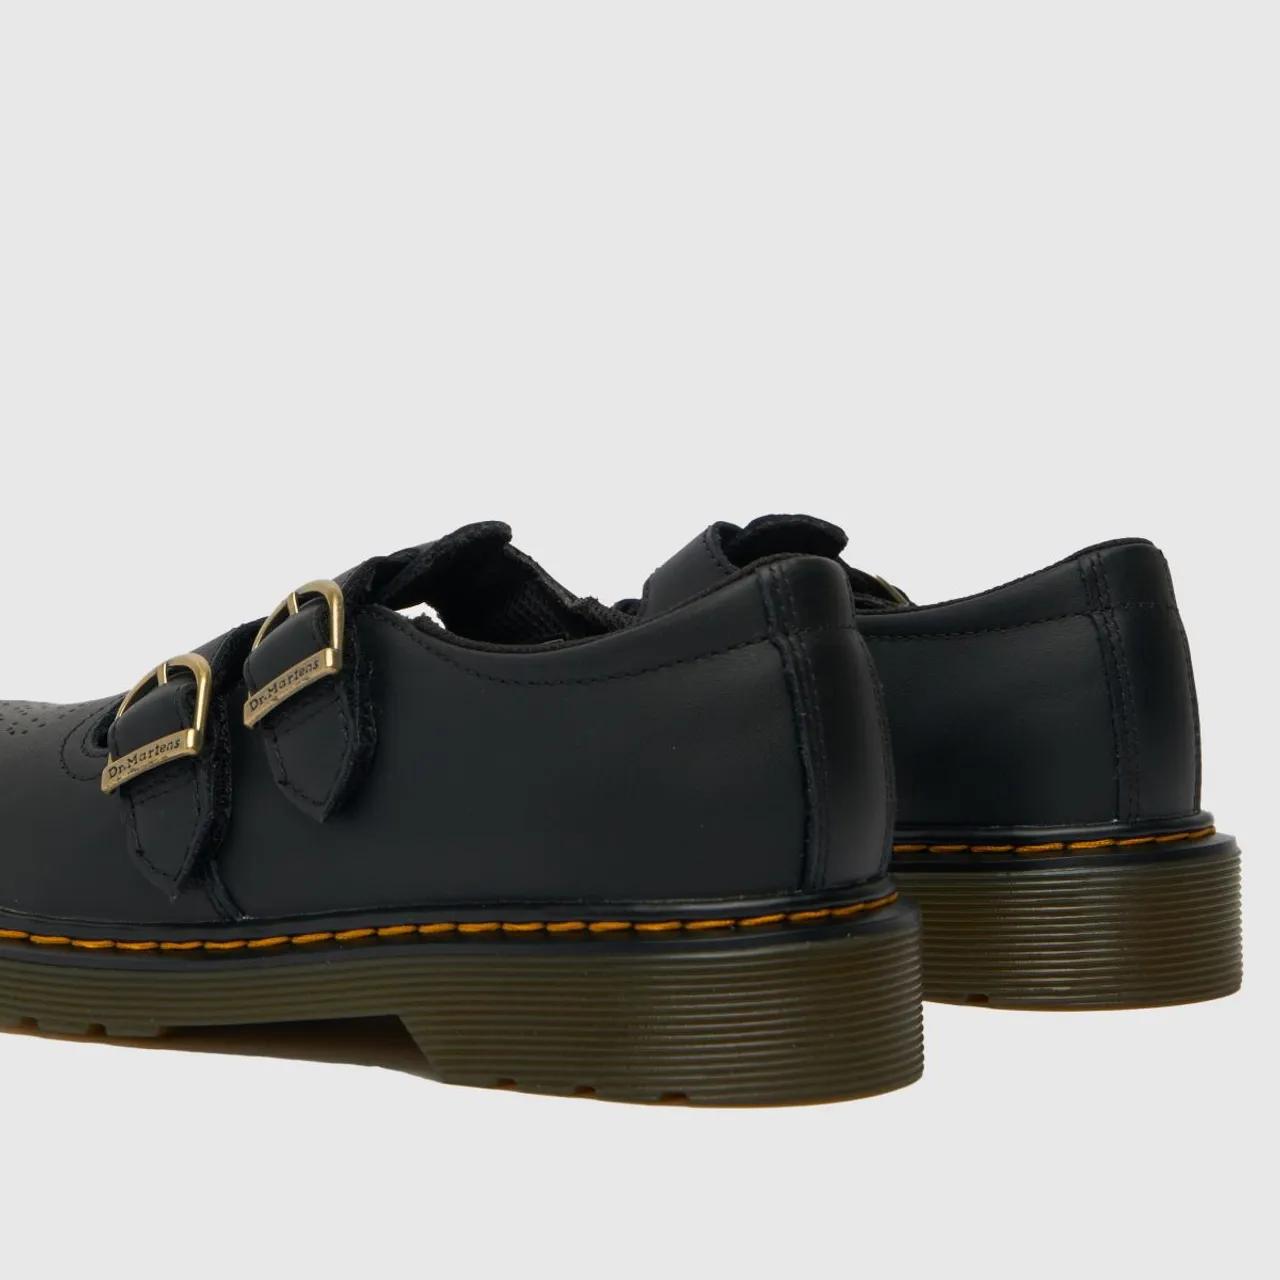 Dr Martens Black 8065 Girls Junior Shoes